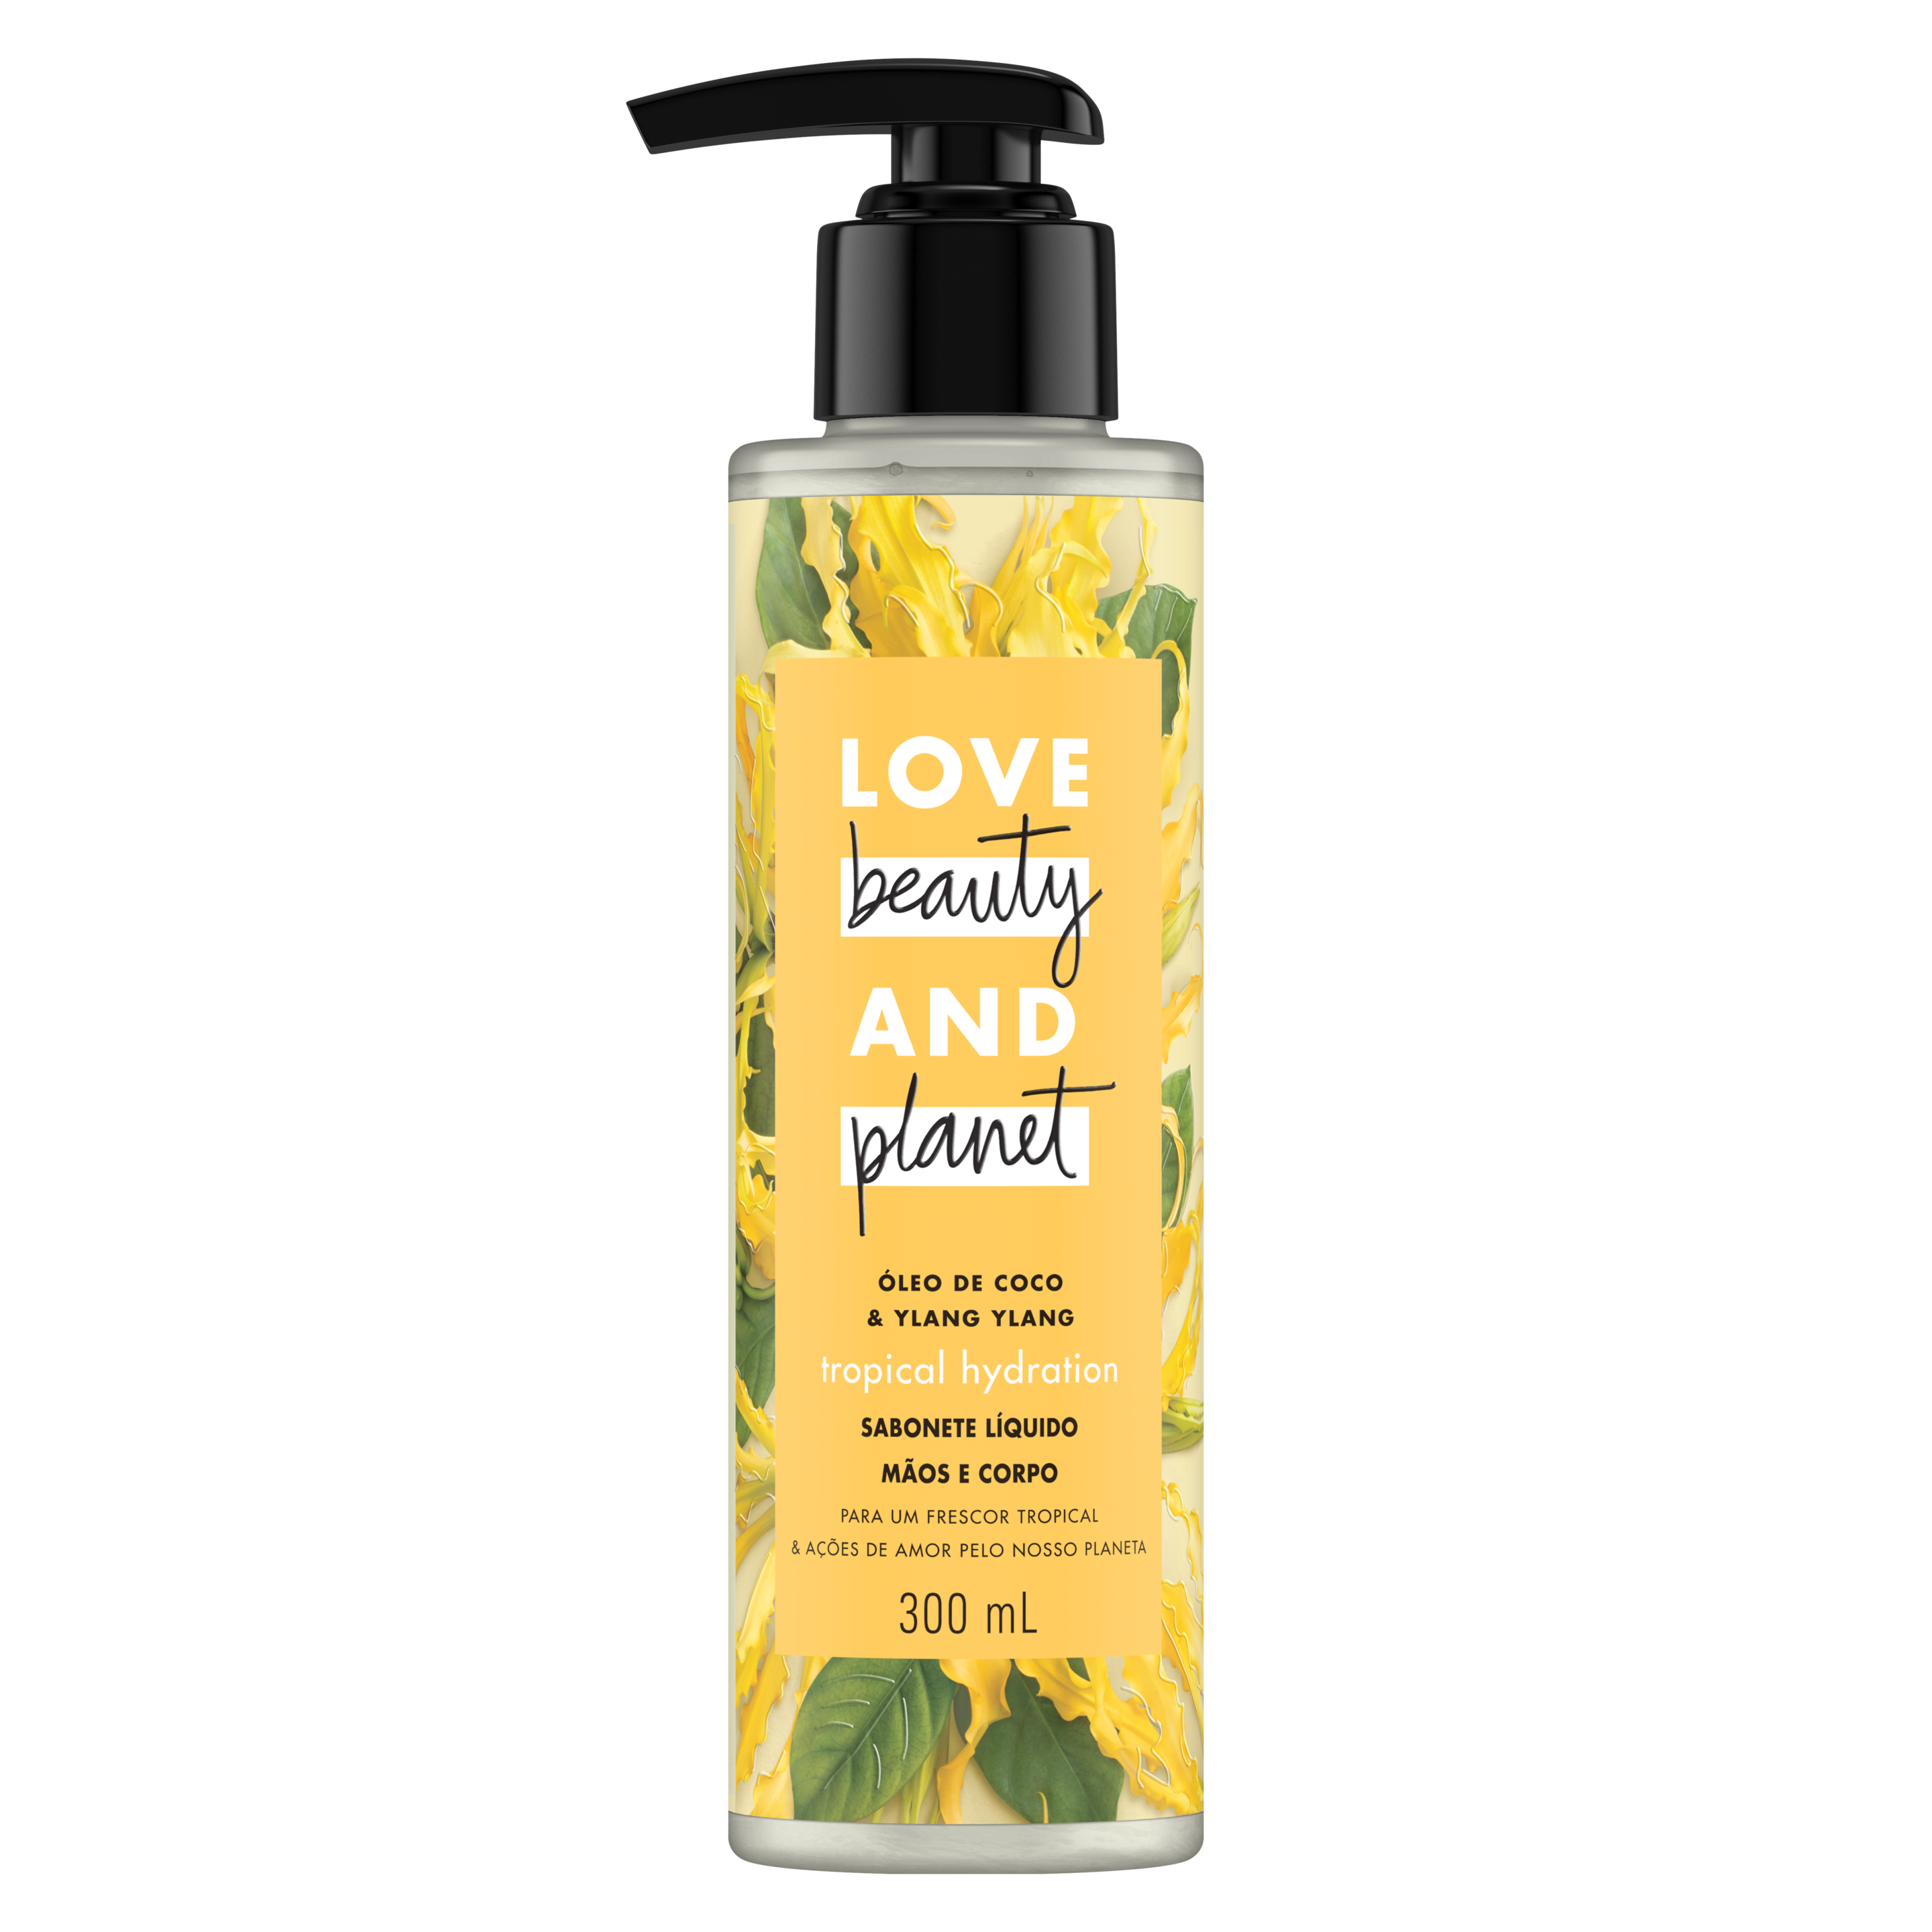 Frente da embalagem do sabonete líquido para o corpo e mãos Love Beauty and Planet óleo de coco & ylang-ylang 300 ml